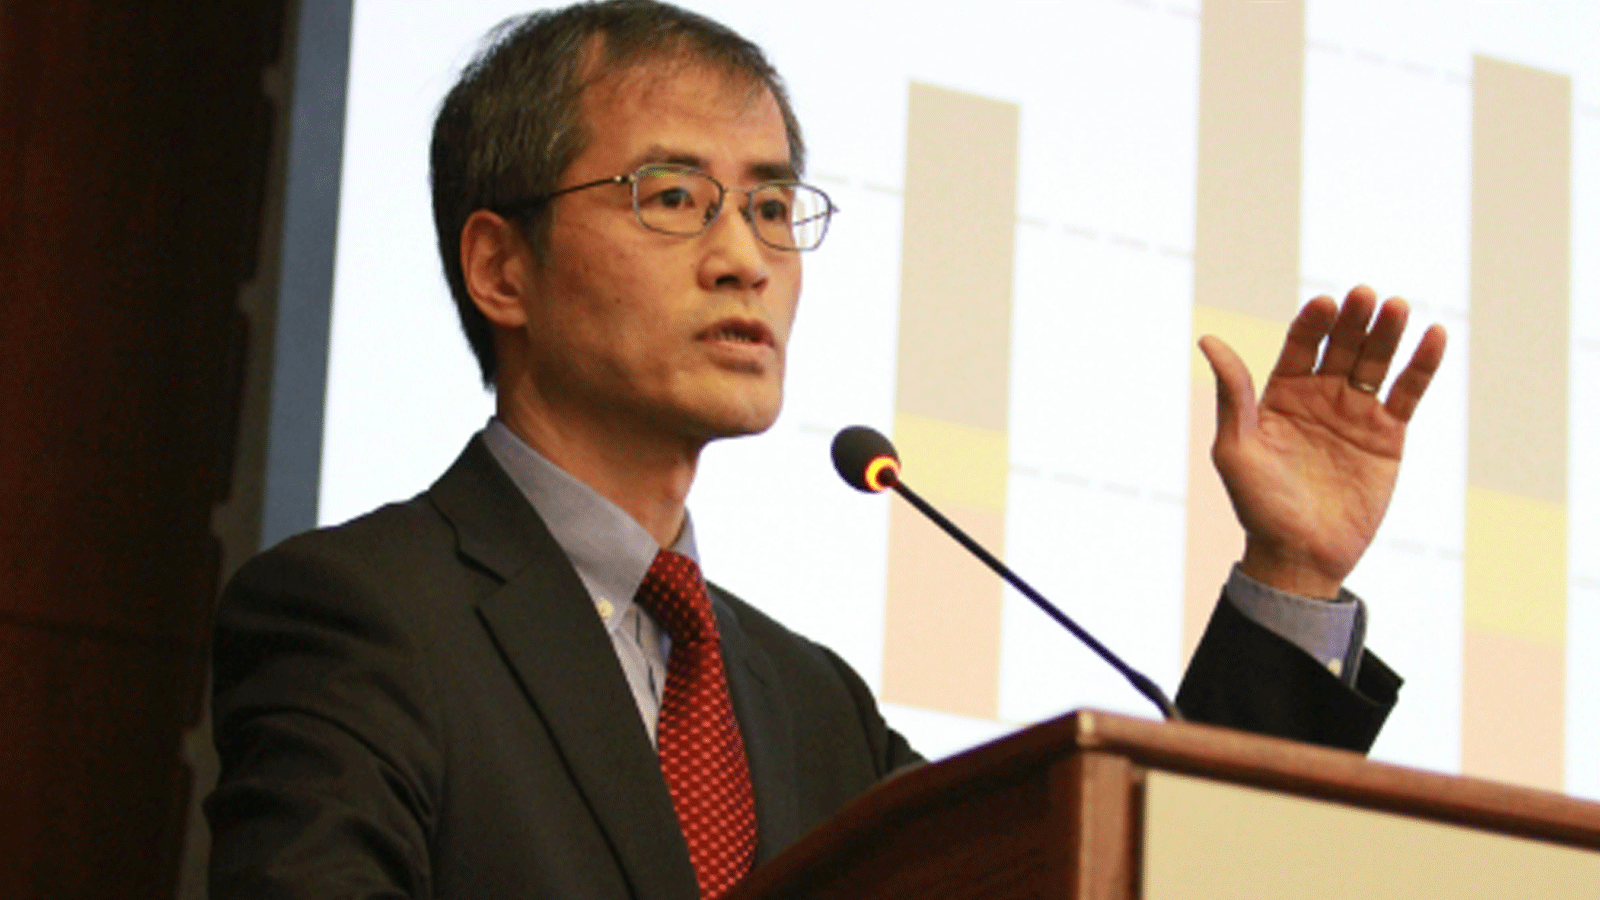  كيسكوي ساداموري، المدير العام لأسواق الطاقة والامن في الوكالة الدولية للطاقة